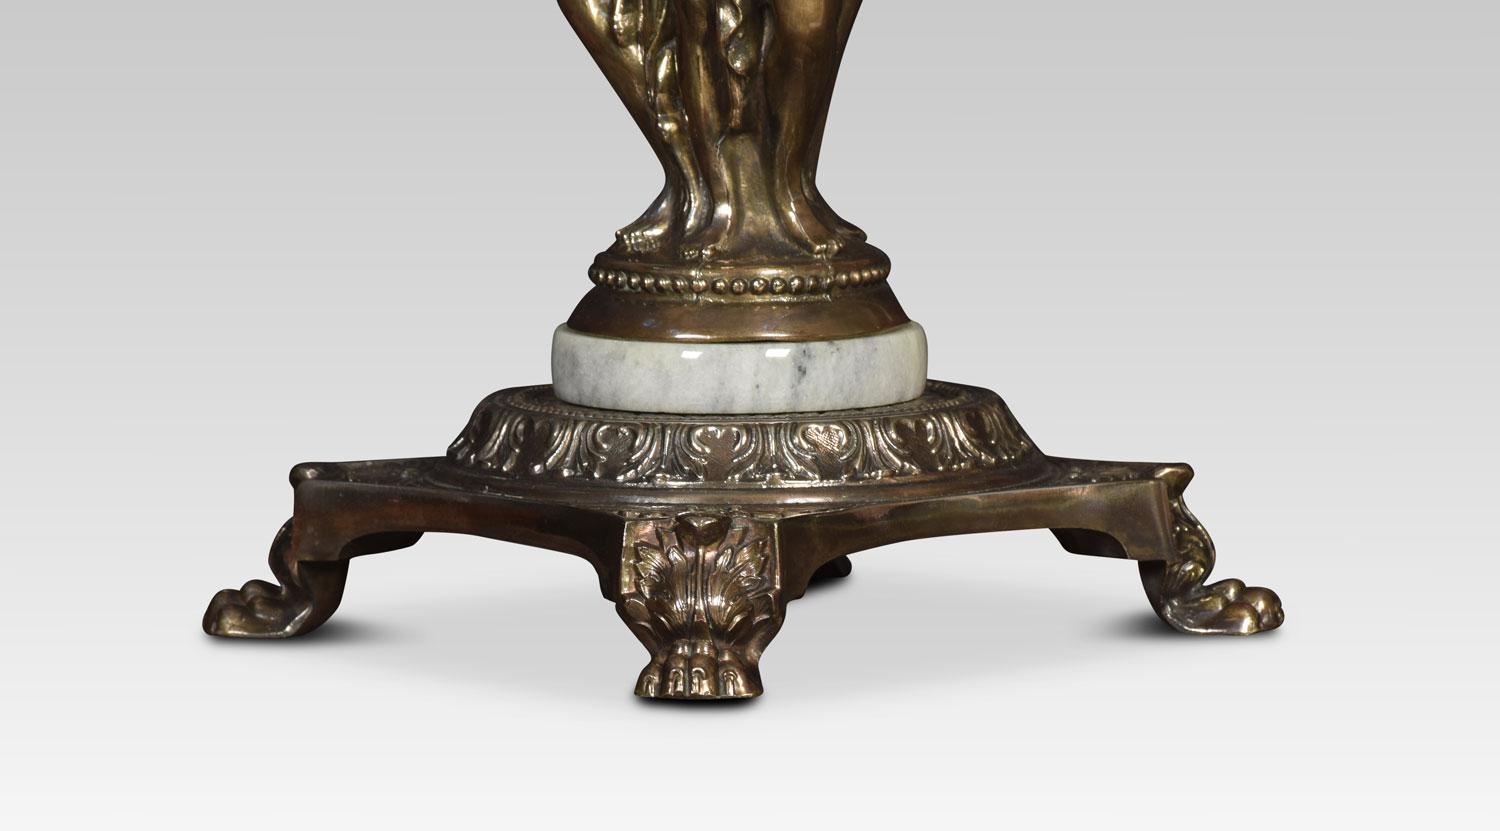 Tischlampe aus Zinn, 19. Jahrhundert, mit figuralem Schaft auf quadratischem Sockel, der in blattumkränzten Tatzenfüßen endet.
Abmessungen:
Höhe 18 Zoll
Breite 8,5 Zoll
Tiefe 8,5 Zoll.